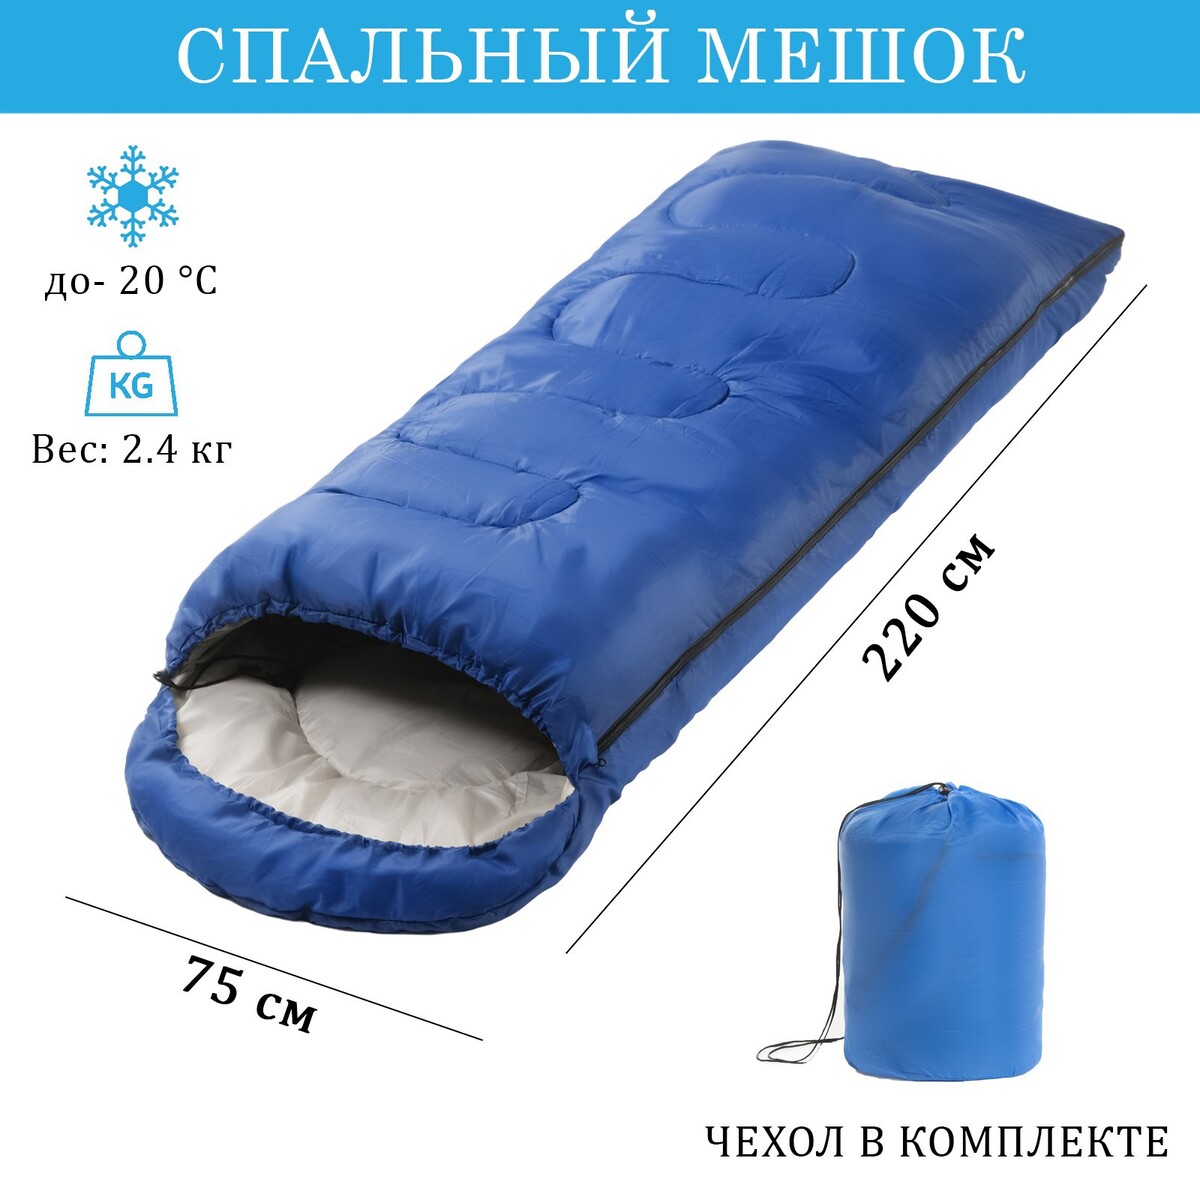 Спальный мешок туристический, 220 х 75 см, до -20 градусов, 700 г/м2, синий спальный мешок туристический 220 х 75 см до 20 градусов 700 г м2 хвои